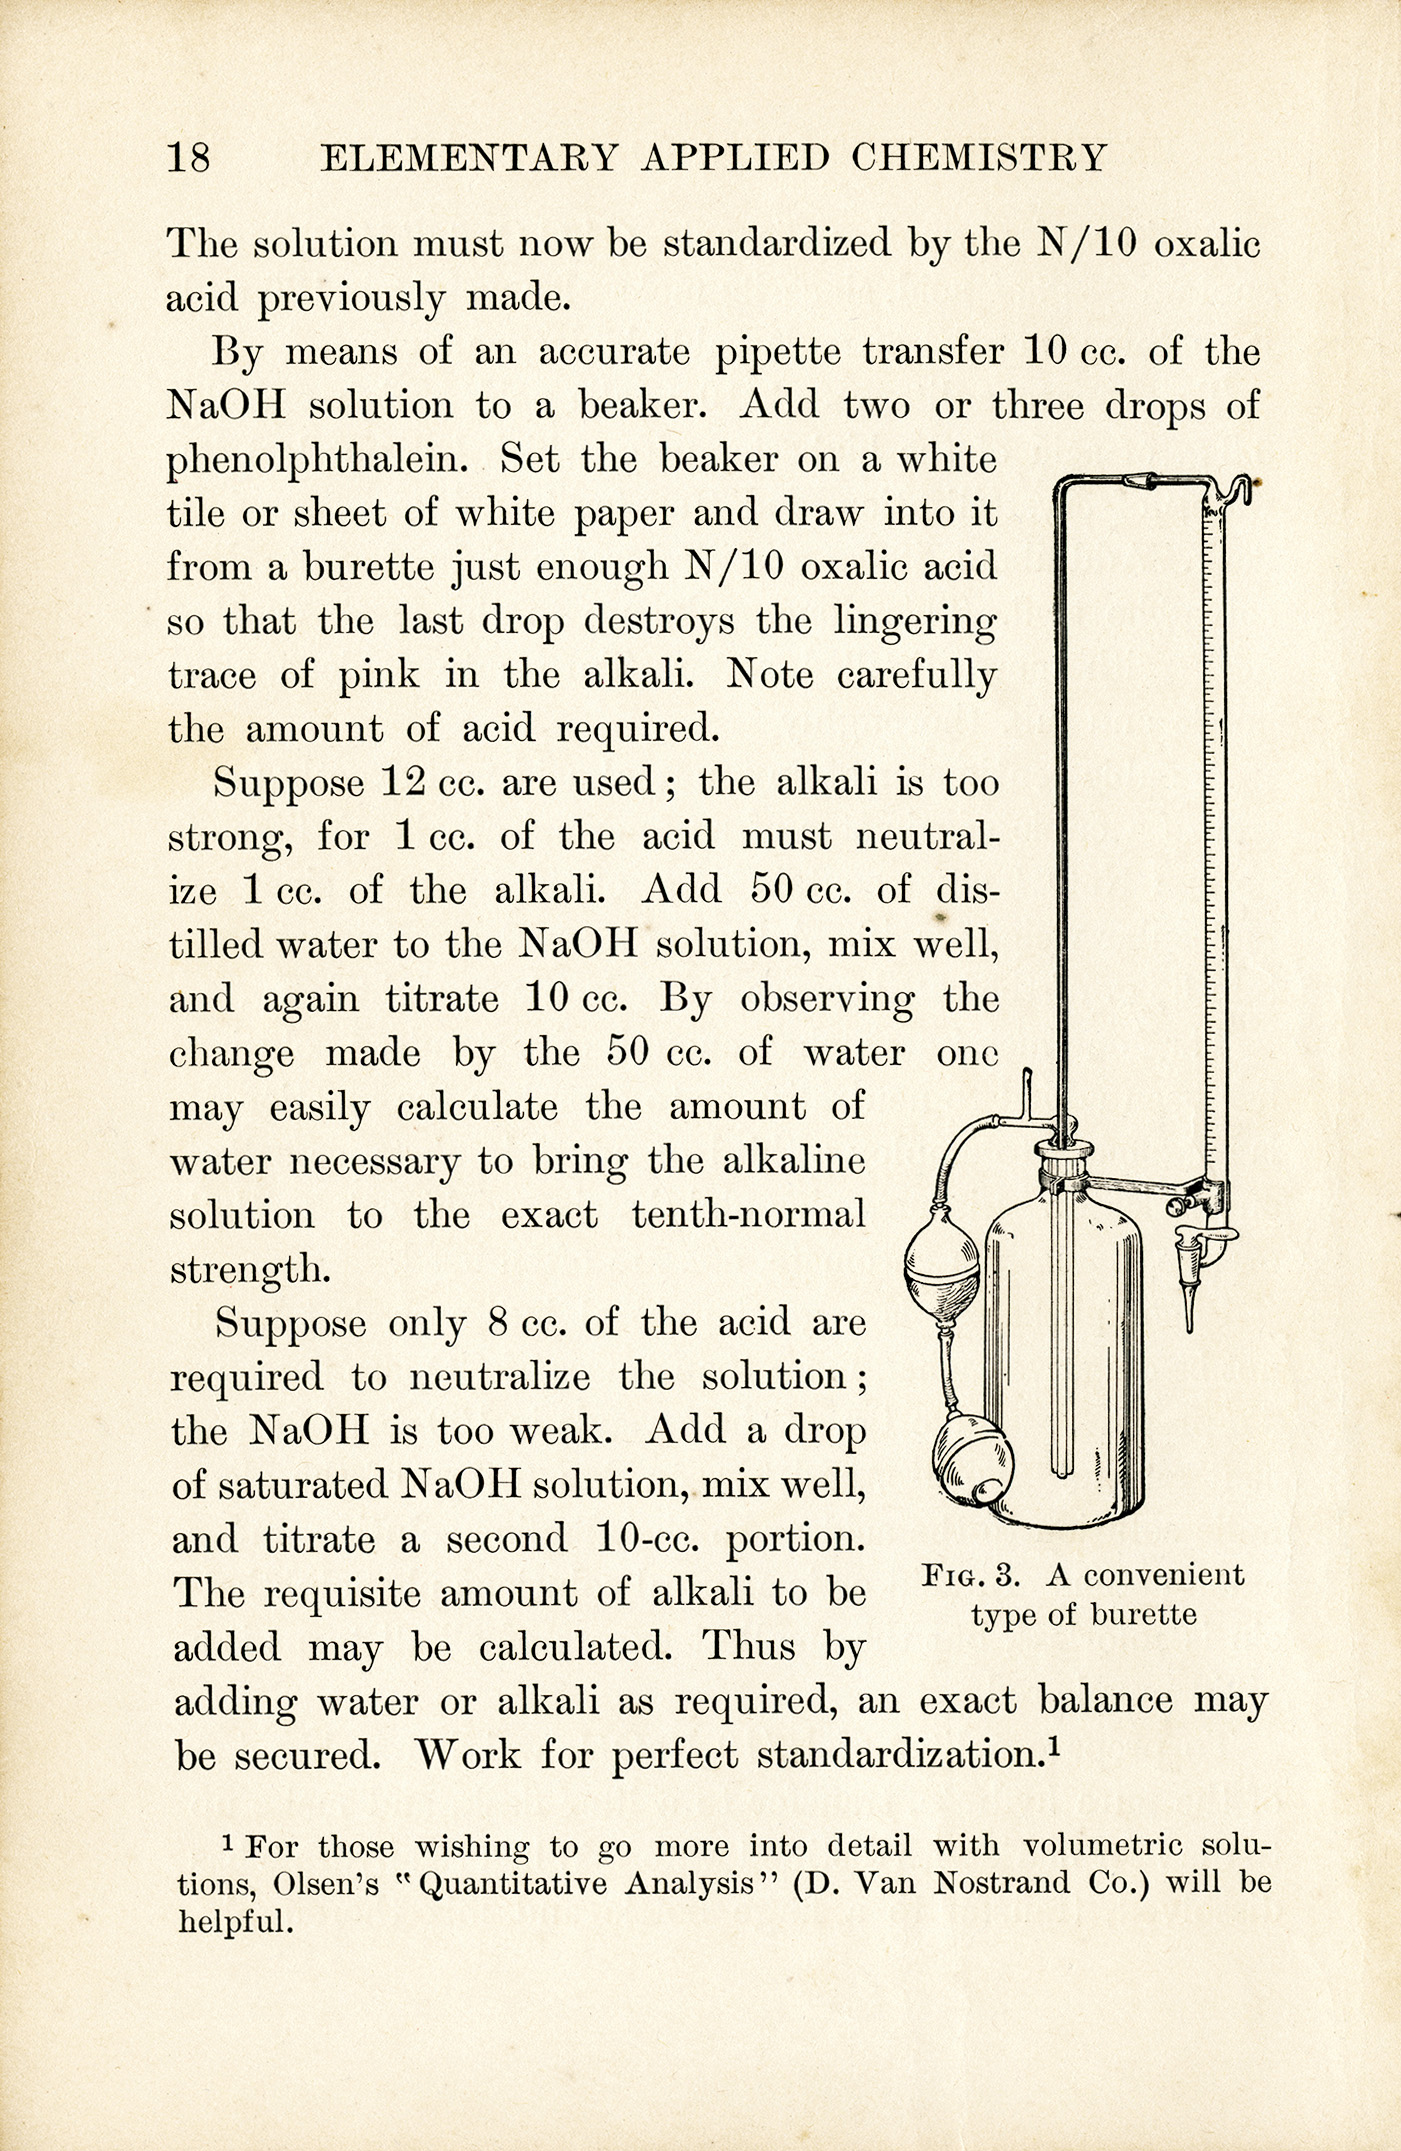 Vintage Chemistry Book Pages | Old Design Shop Blog